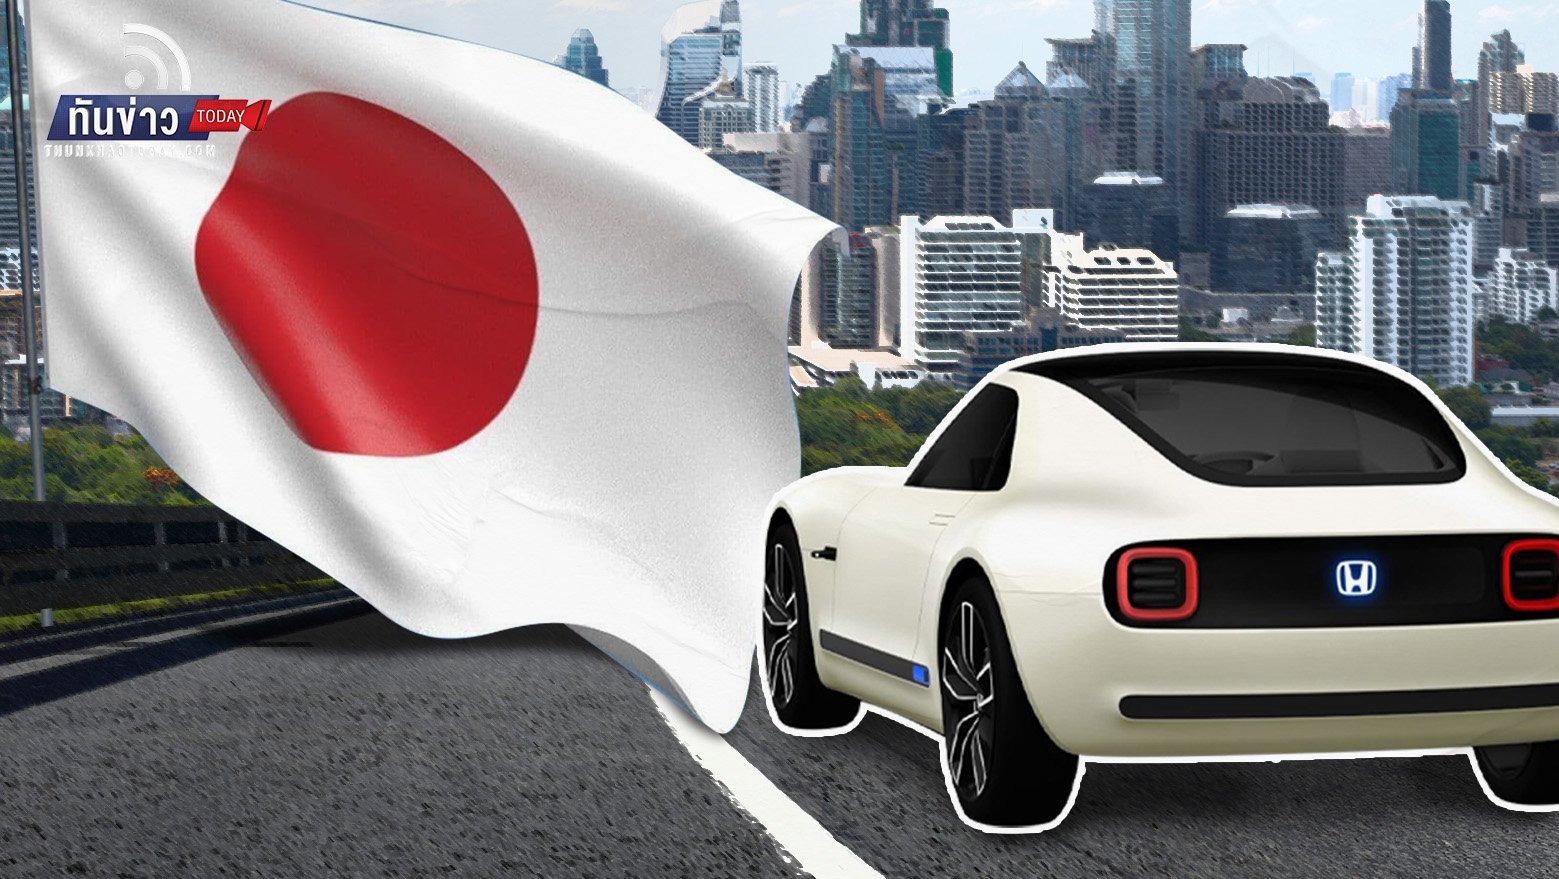 ค่ายรถญี่ปุ่นเตรียมผลิต EV ในไทยมูลค่ากว่า 1.5 แสนล้านบาท